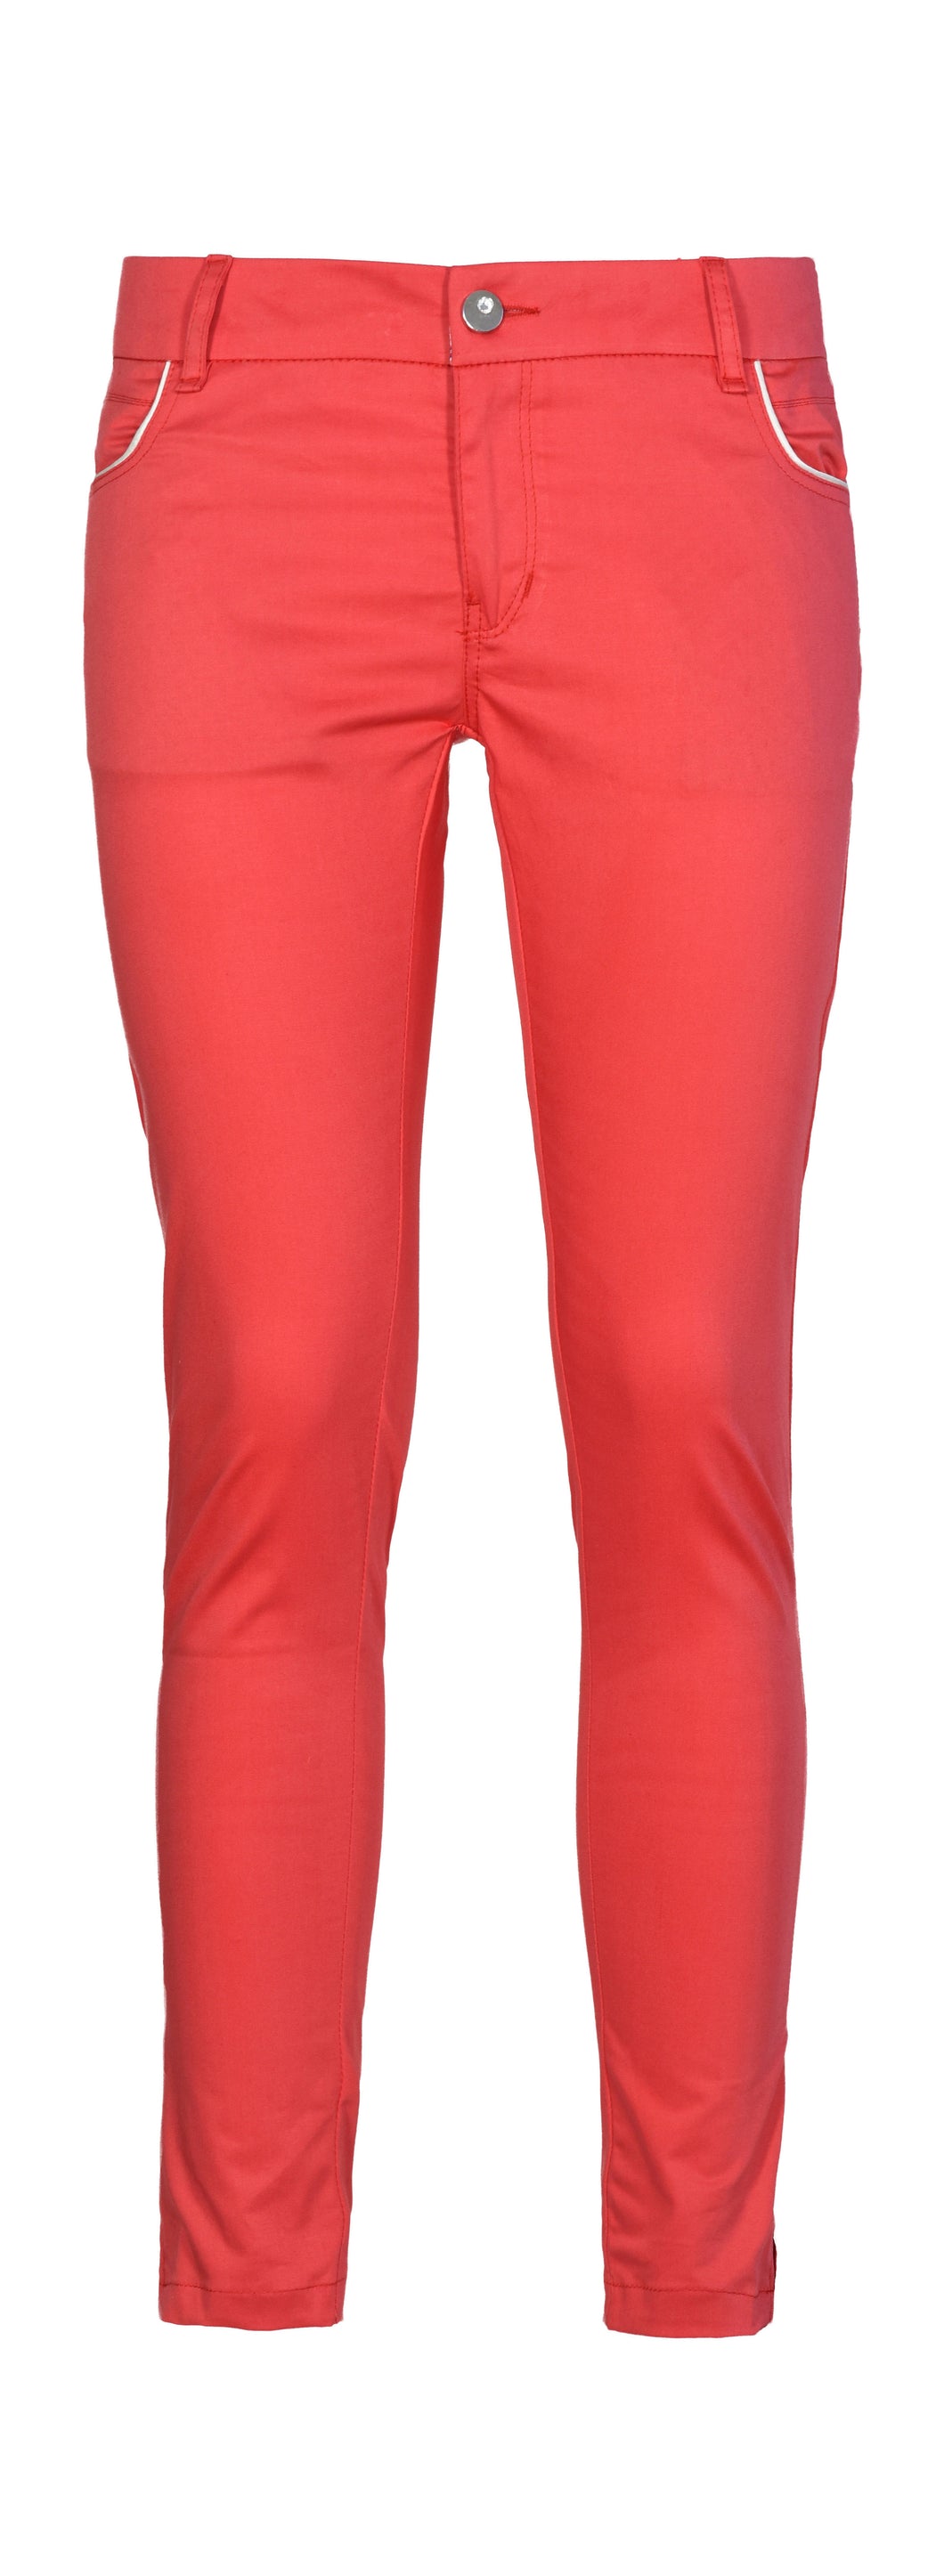 Pantaloni Donna colore Rosso